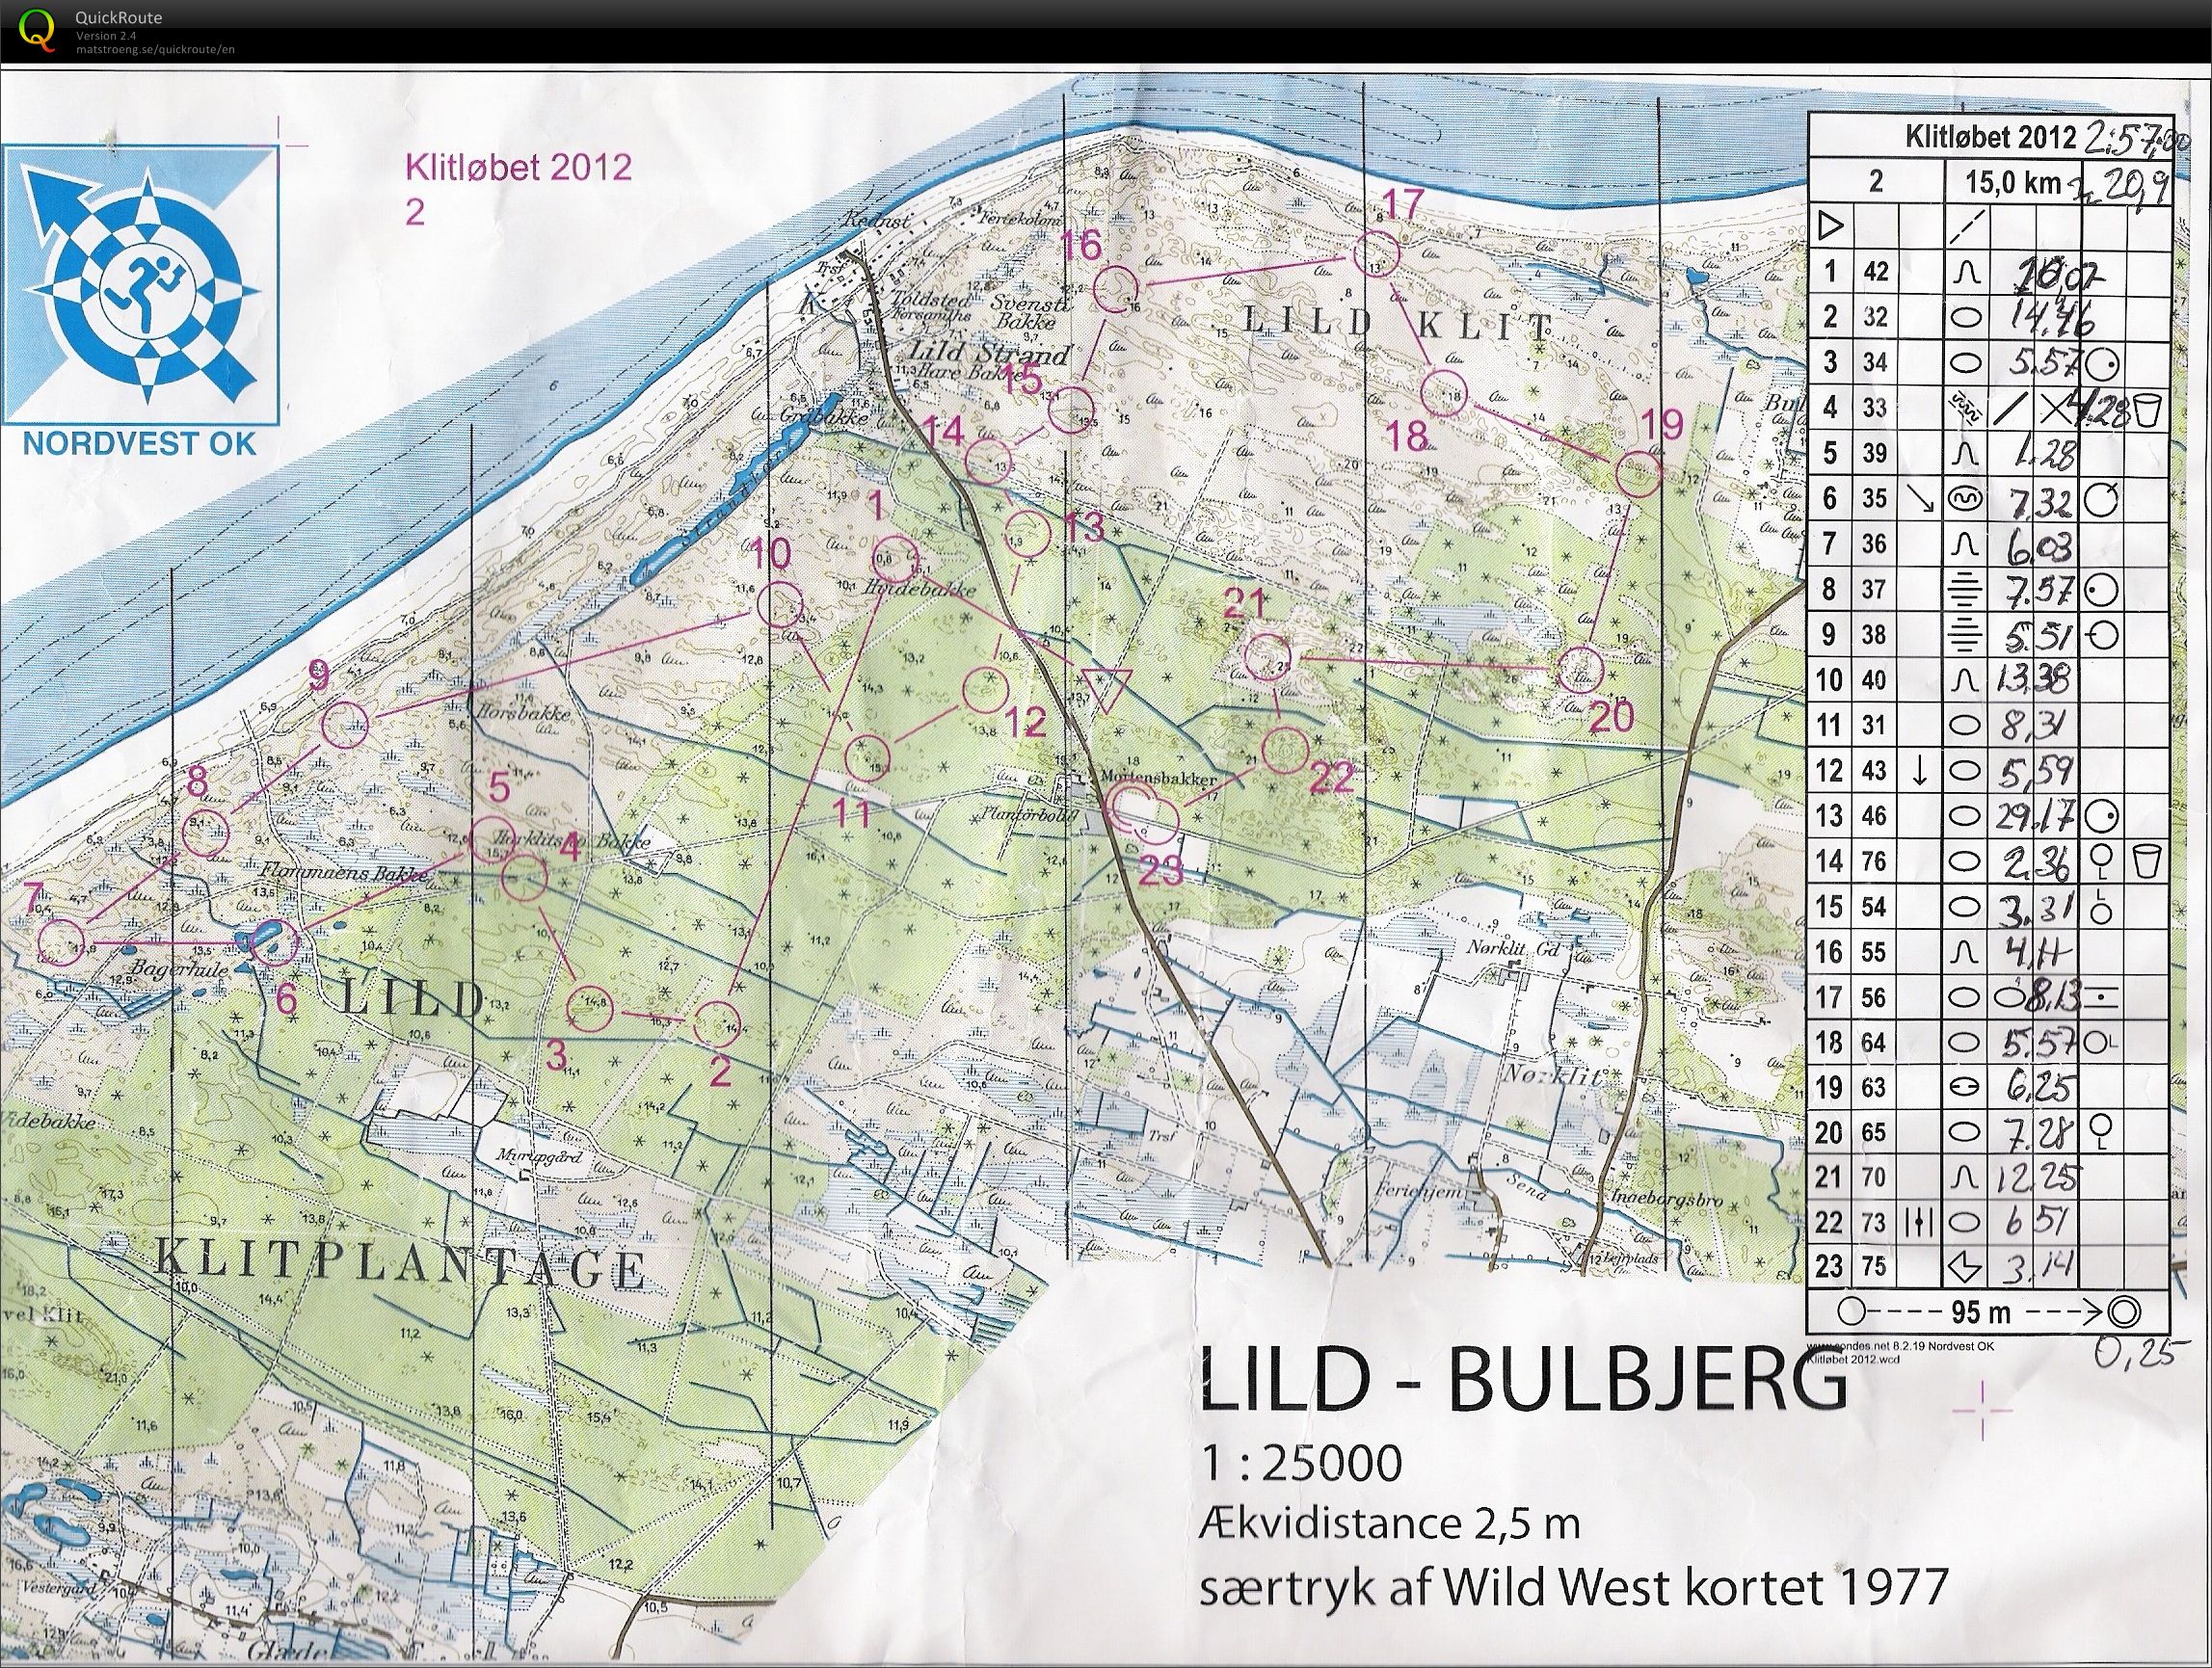 Klitløbet - Lild-Bulbjerg - 2012 (17/06/2012)